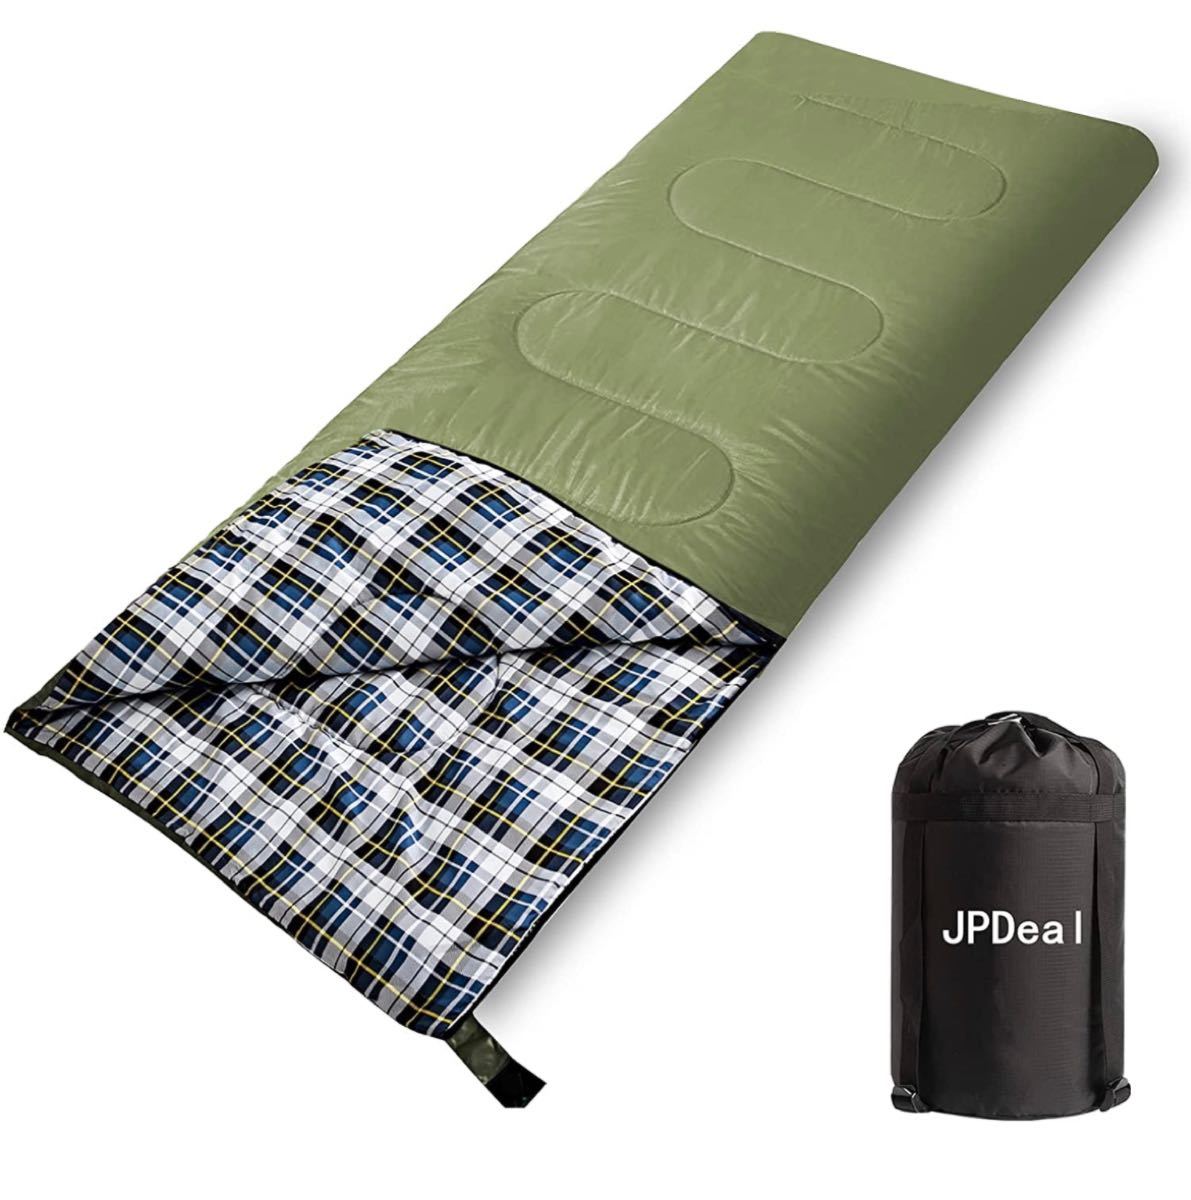 寝袋 1.5kg シュラフ 封筒型 保温 軽量 210T防水シュラフ 快適温度-10℃~25℃ 春用 夏用 秋用 冬用